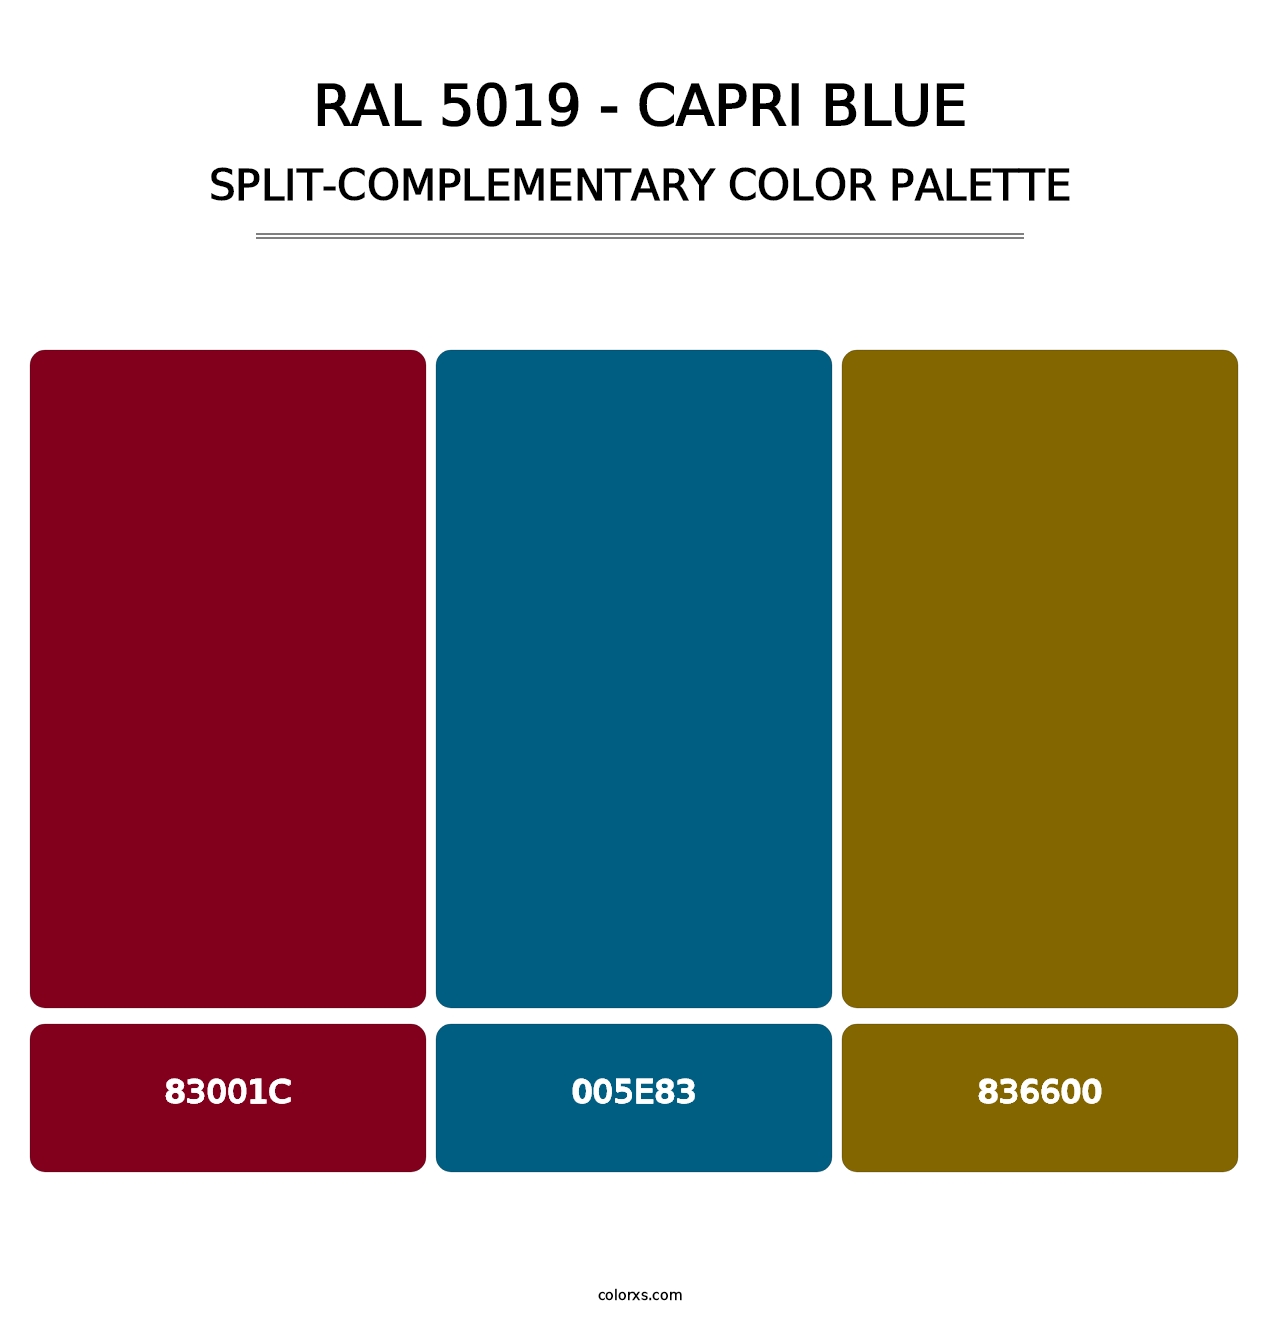 RAL 5019 - Capri Blue - Split-Complementary Color Palette